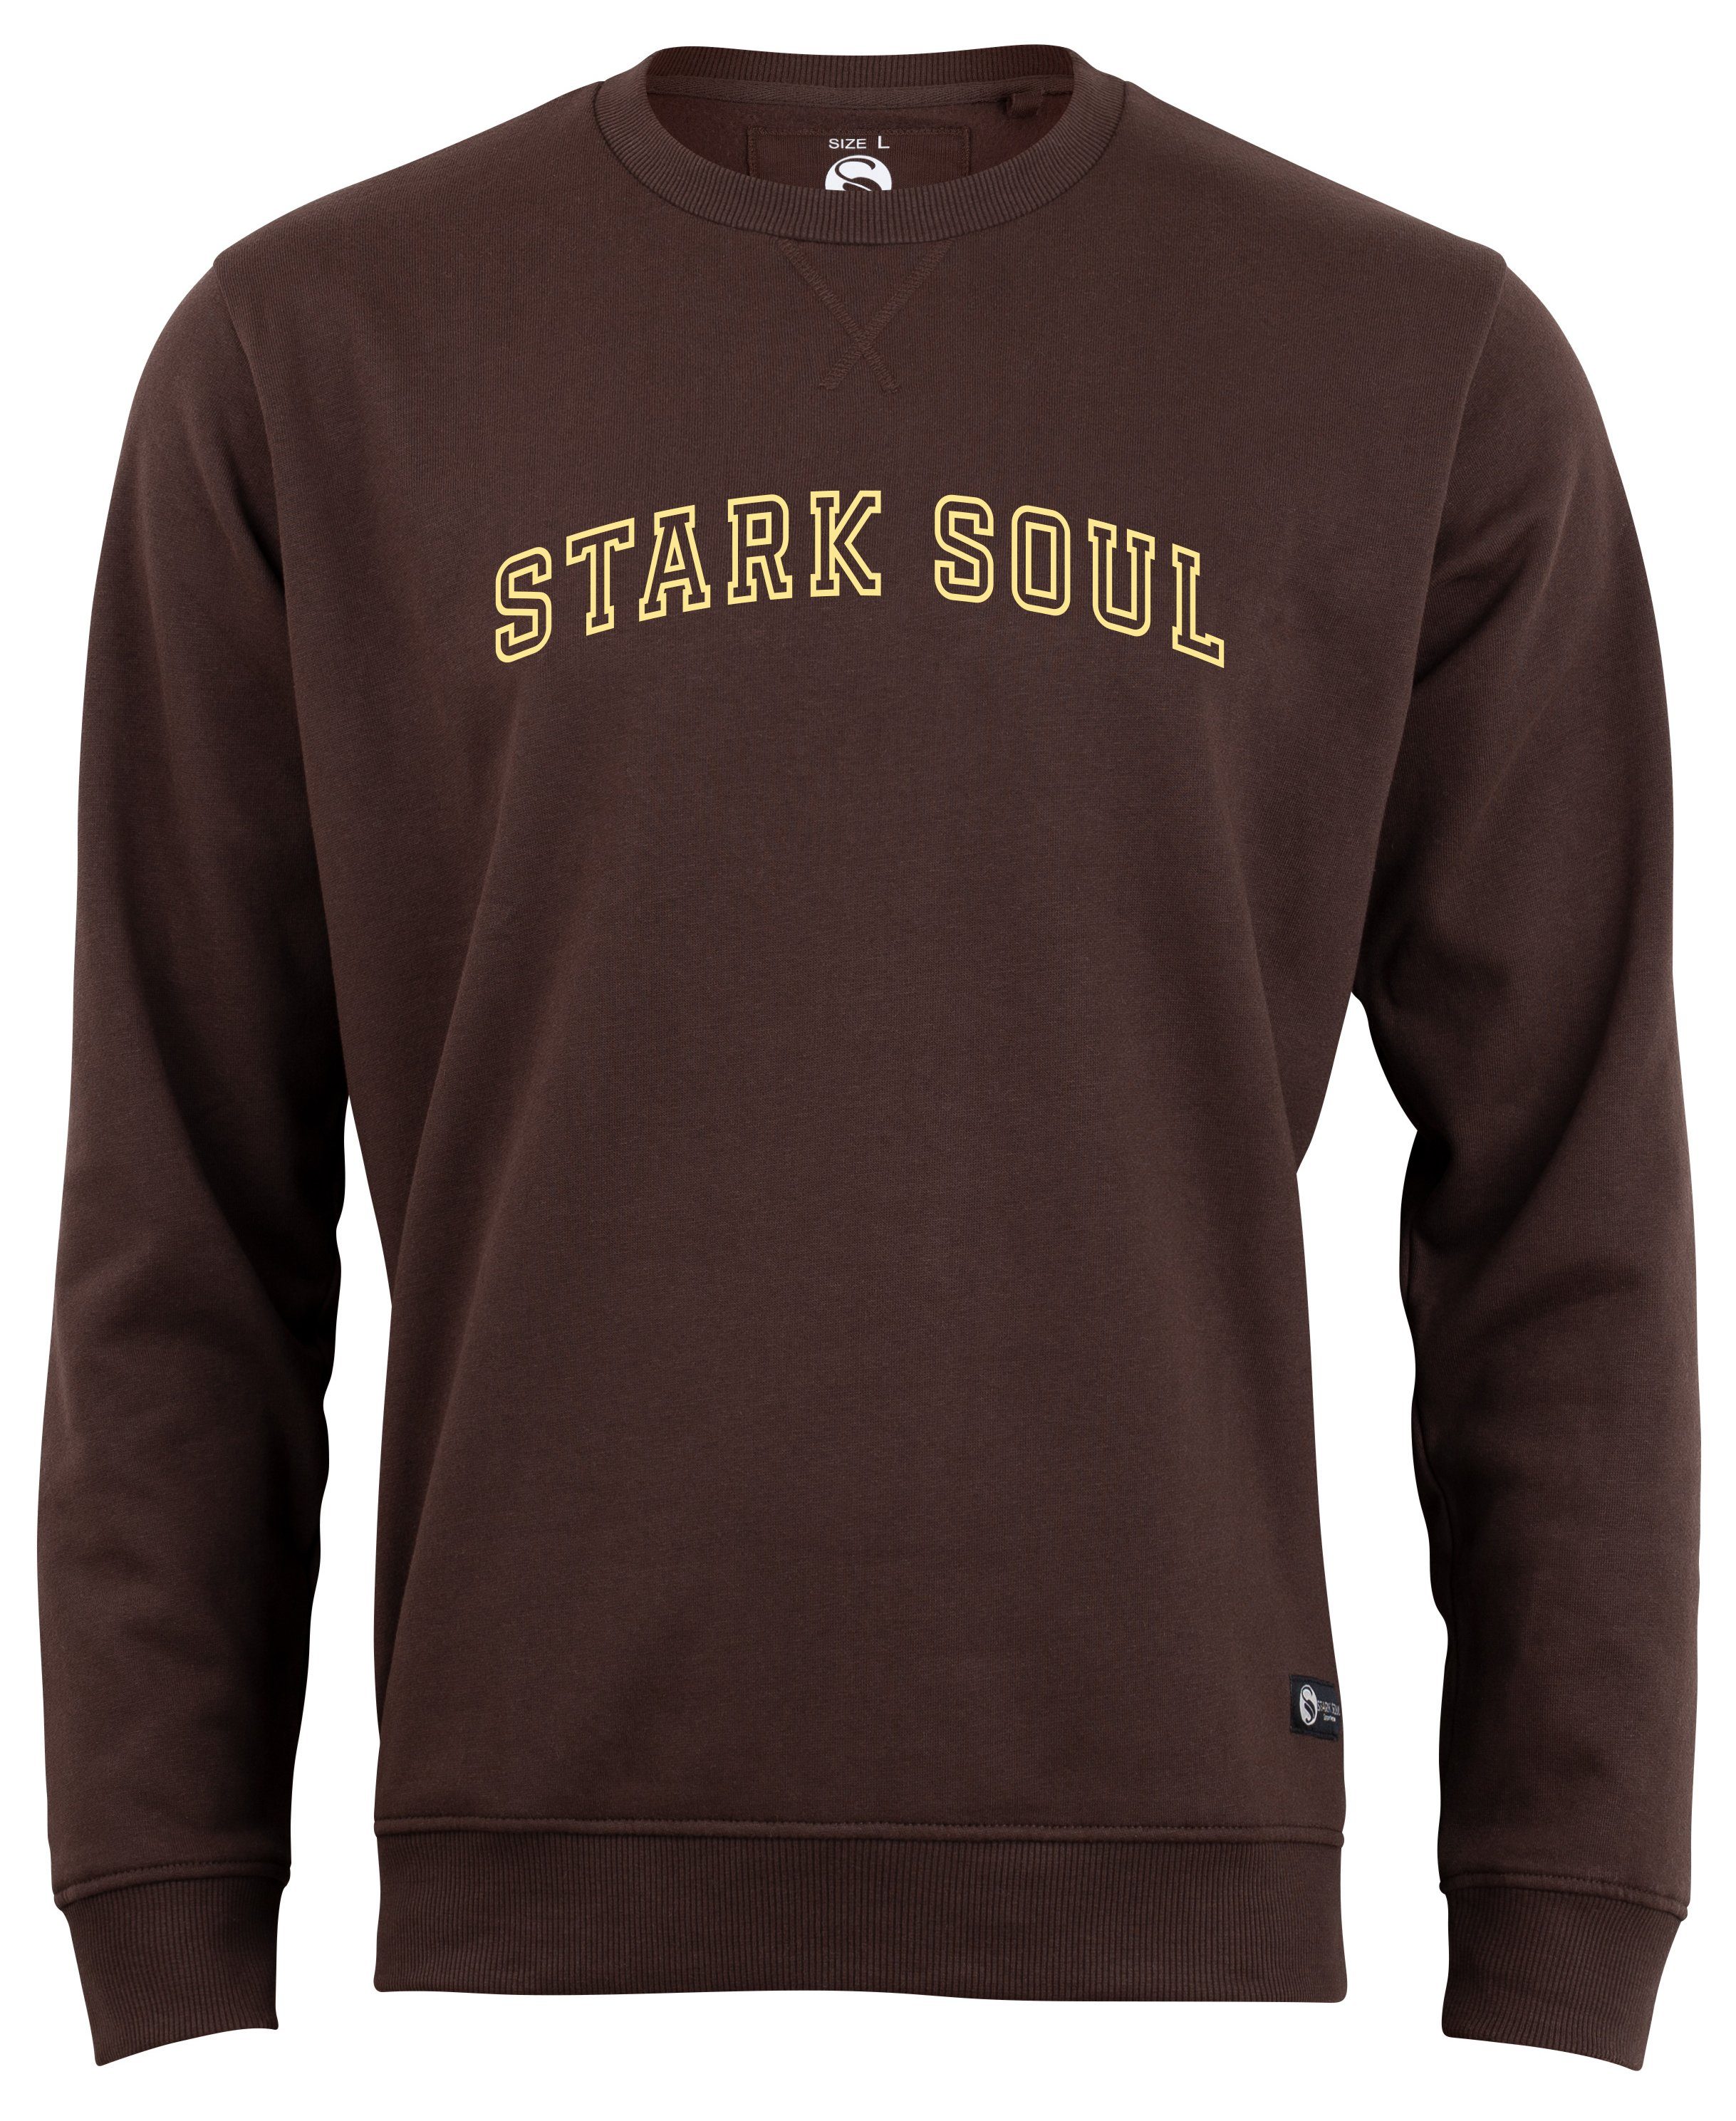 Soul® Unisex Sweatshirt Stark Stark Soul Braun "College" Sweatshirt Rundhals-Sweater